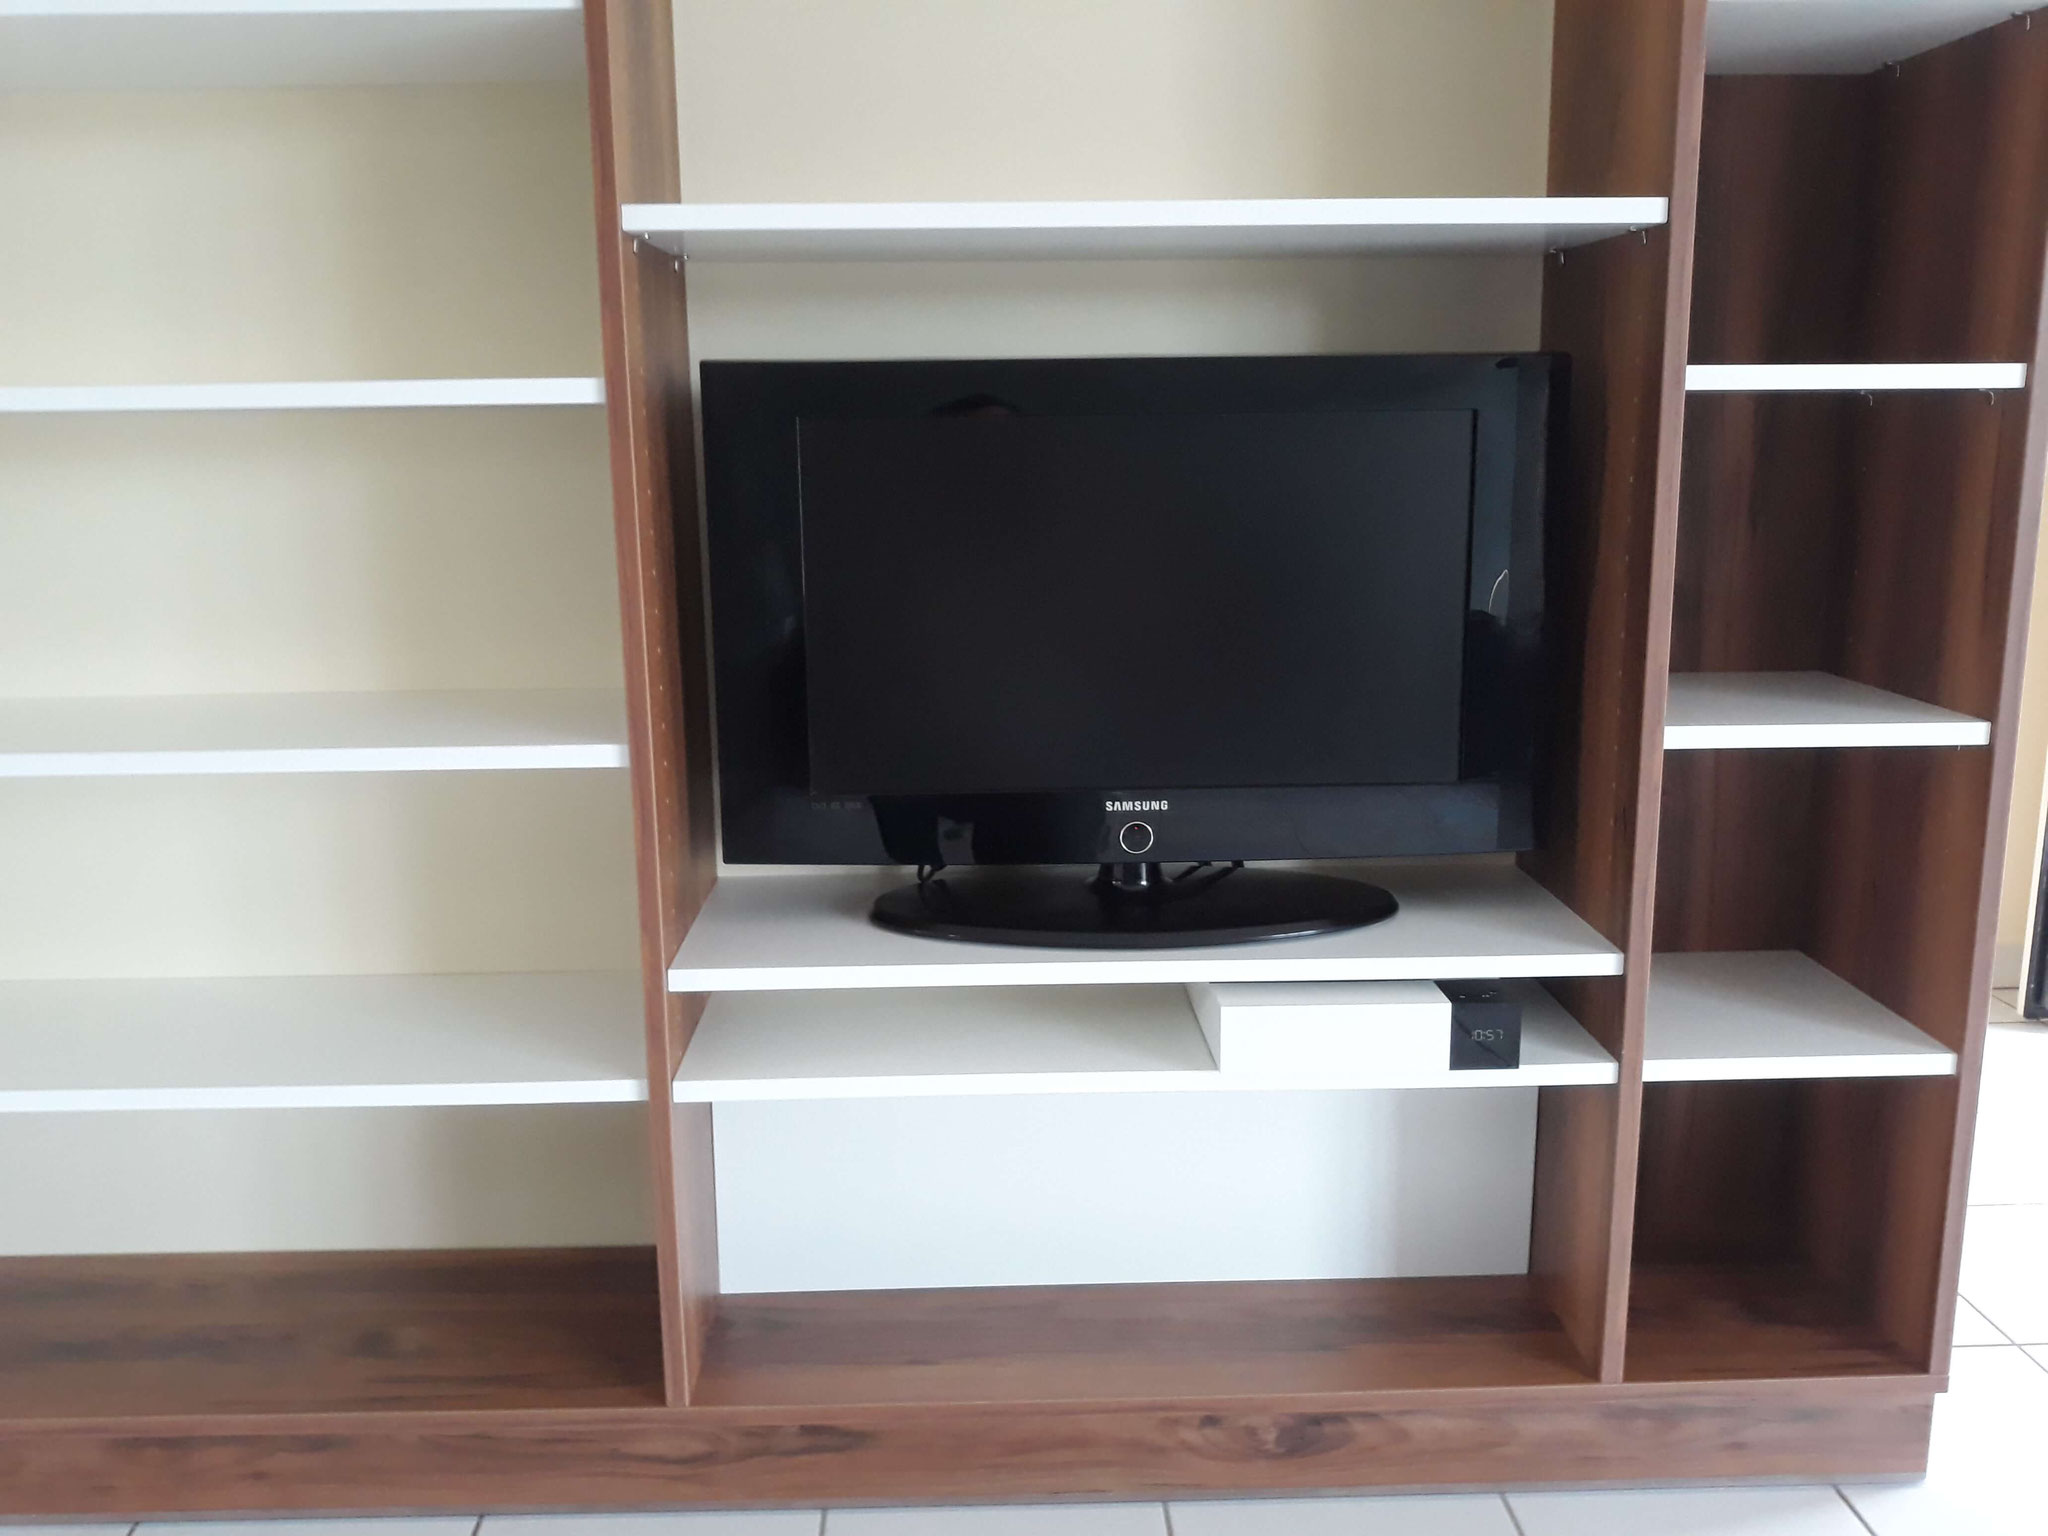 Bibliothèque meuble TV méla poirier + méla blanc avec fond démontable pour cacher les câbles.